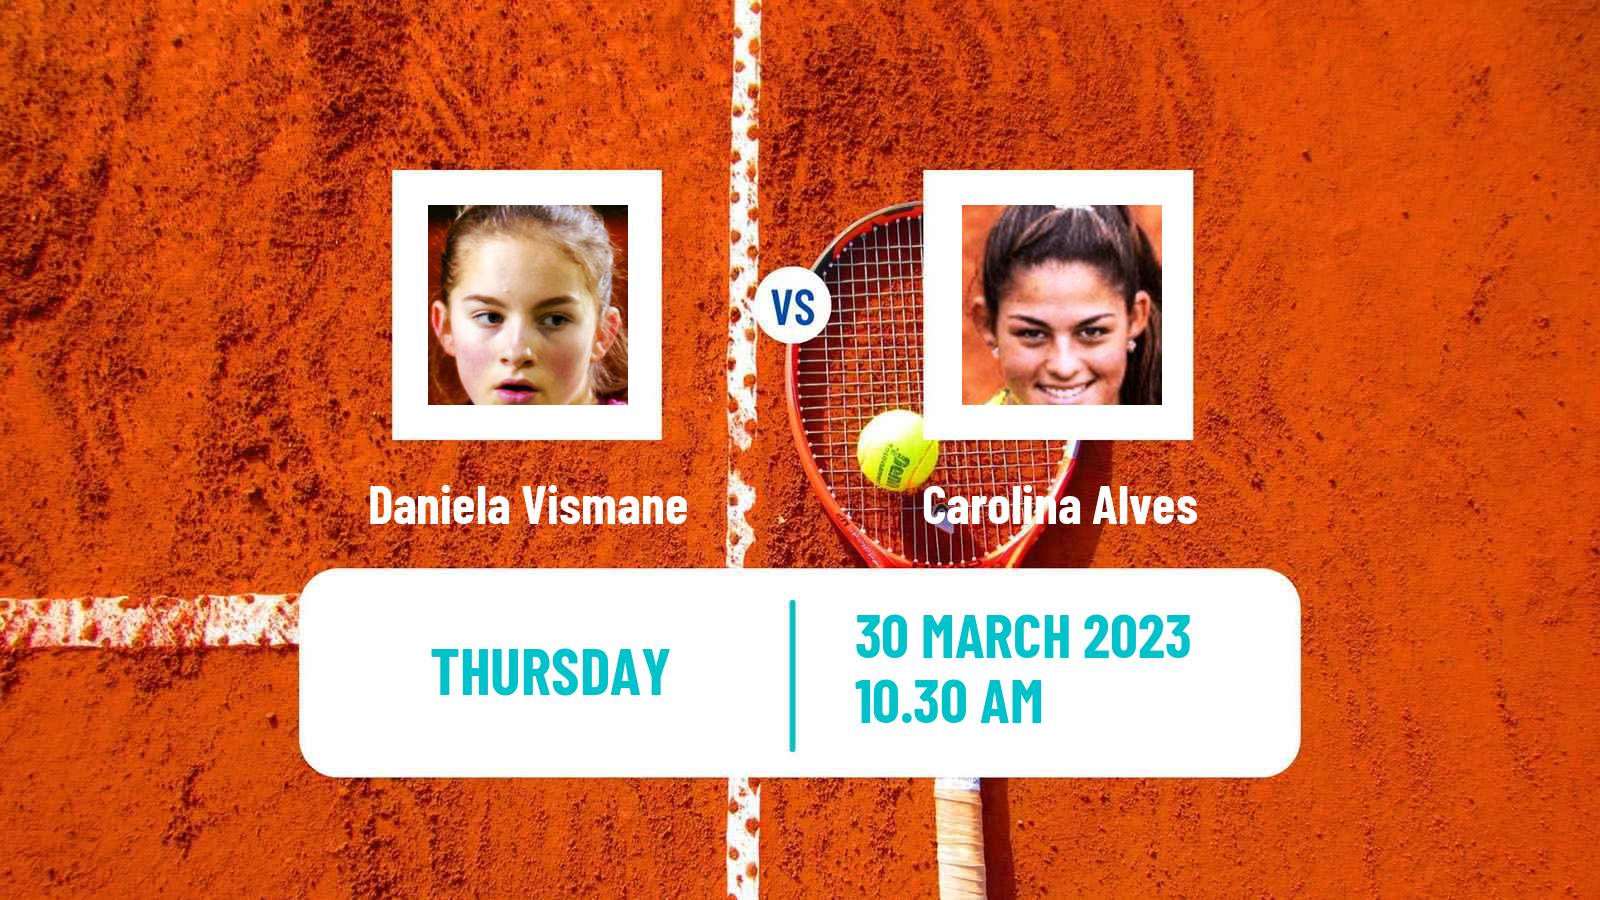 Tennis ITF Tournaments Daniela Vismane - Carolina Alves